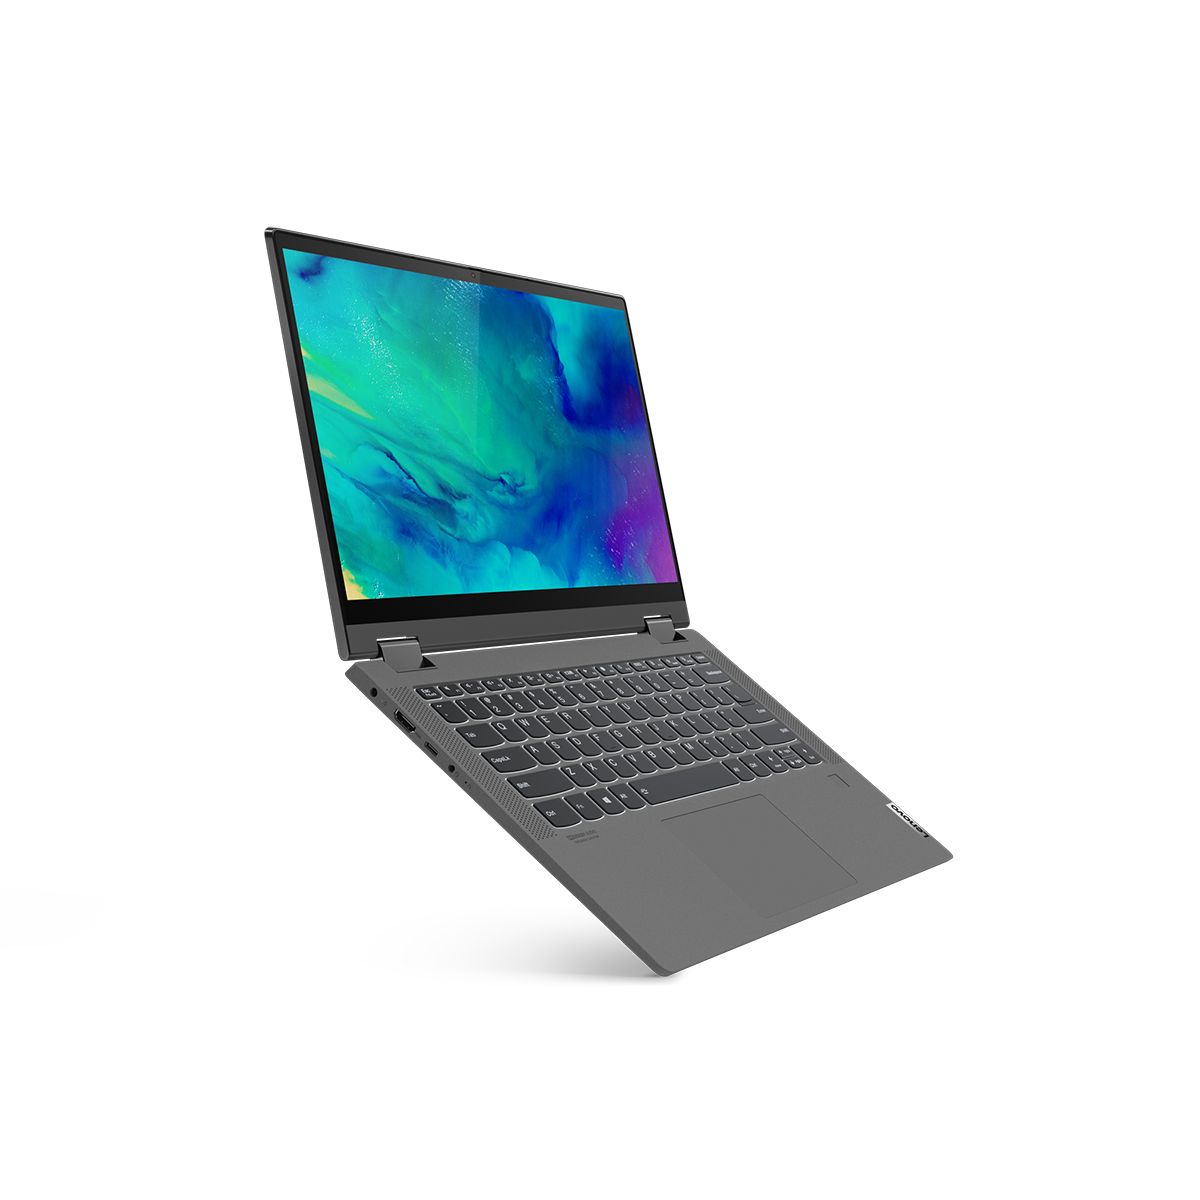 65a548280b34e Notebook Lenovo Ideapad Flex 5: Ficha Técnica, Onde Comprar, Preço E Principais Informações